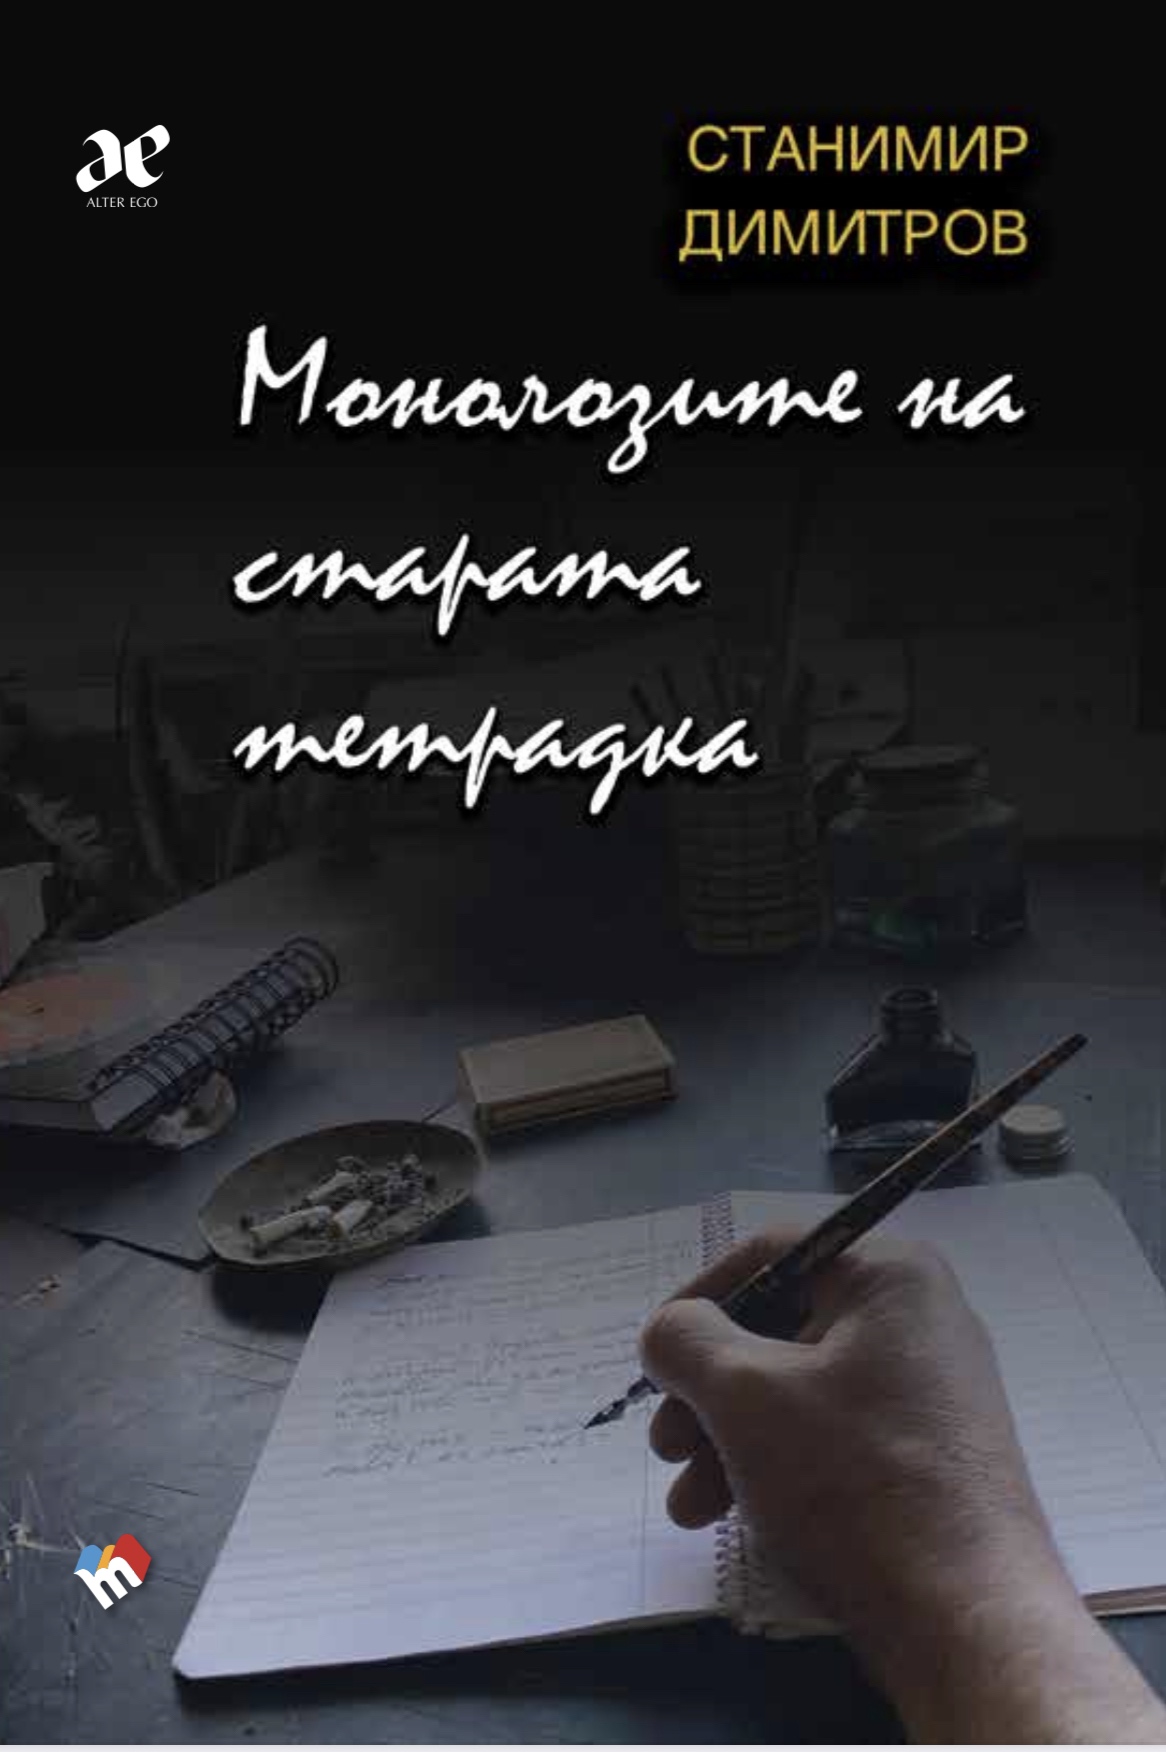 Новата стихосбирка от Станимир Димитров носи името „Монолозите на старата тетрадка“